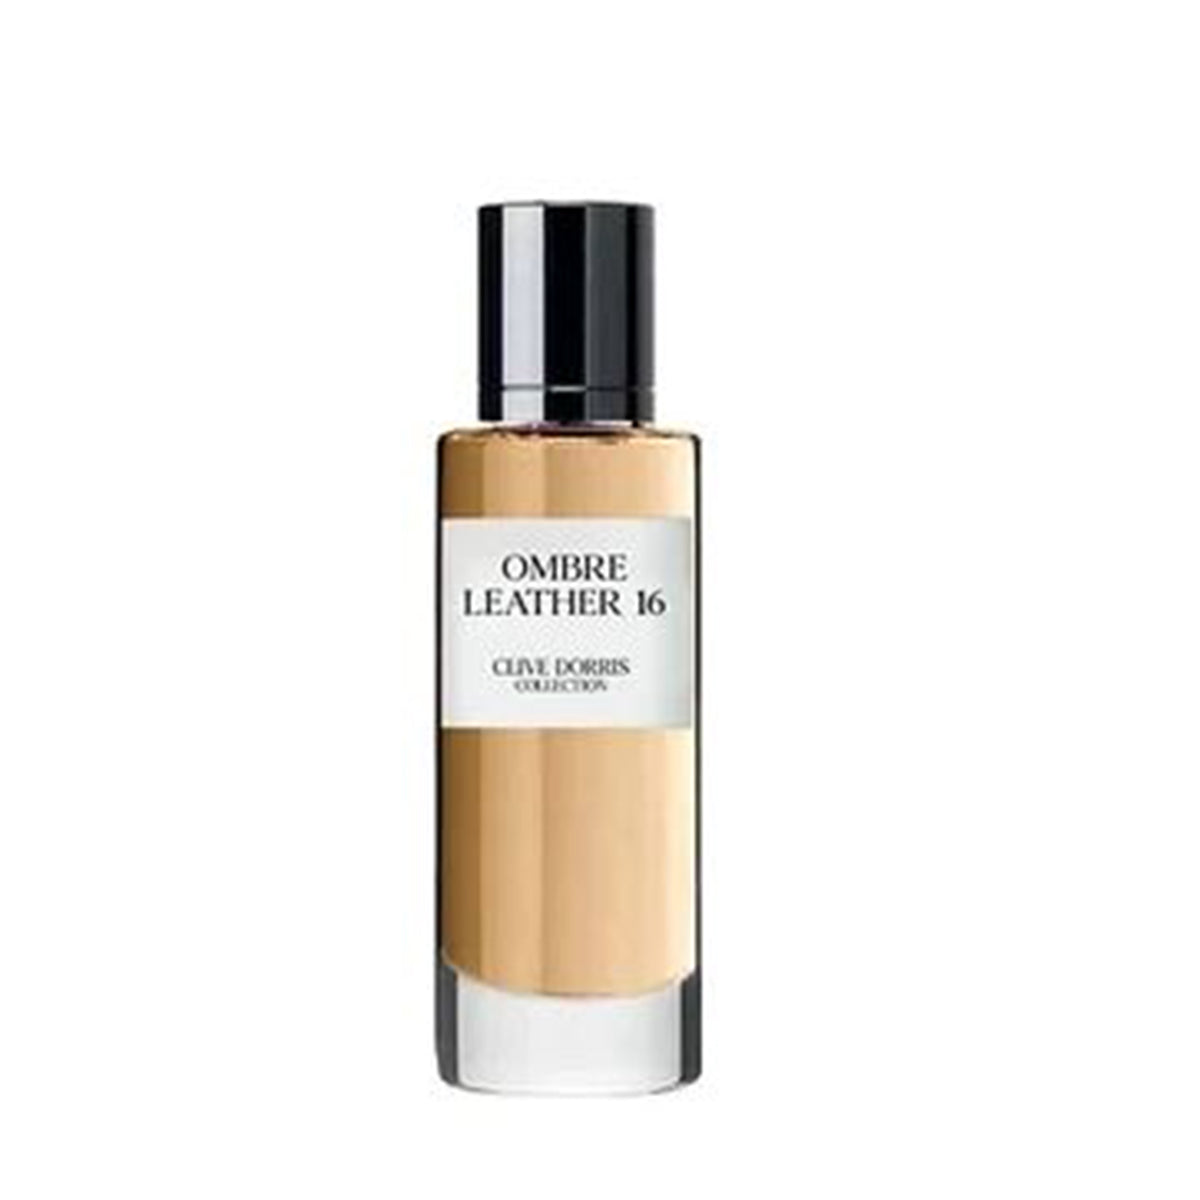 Ombre Leather 16 30ml Eau De Parfum I Clive Dorris-Perfume Heaven